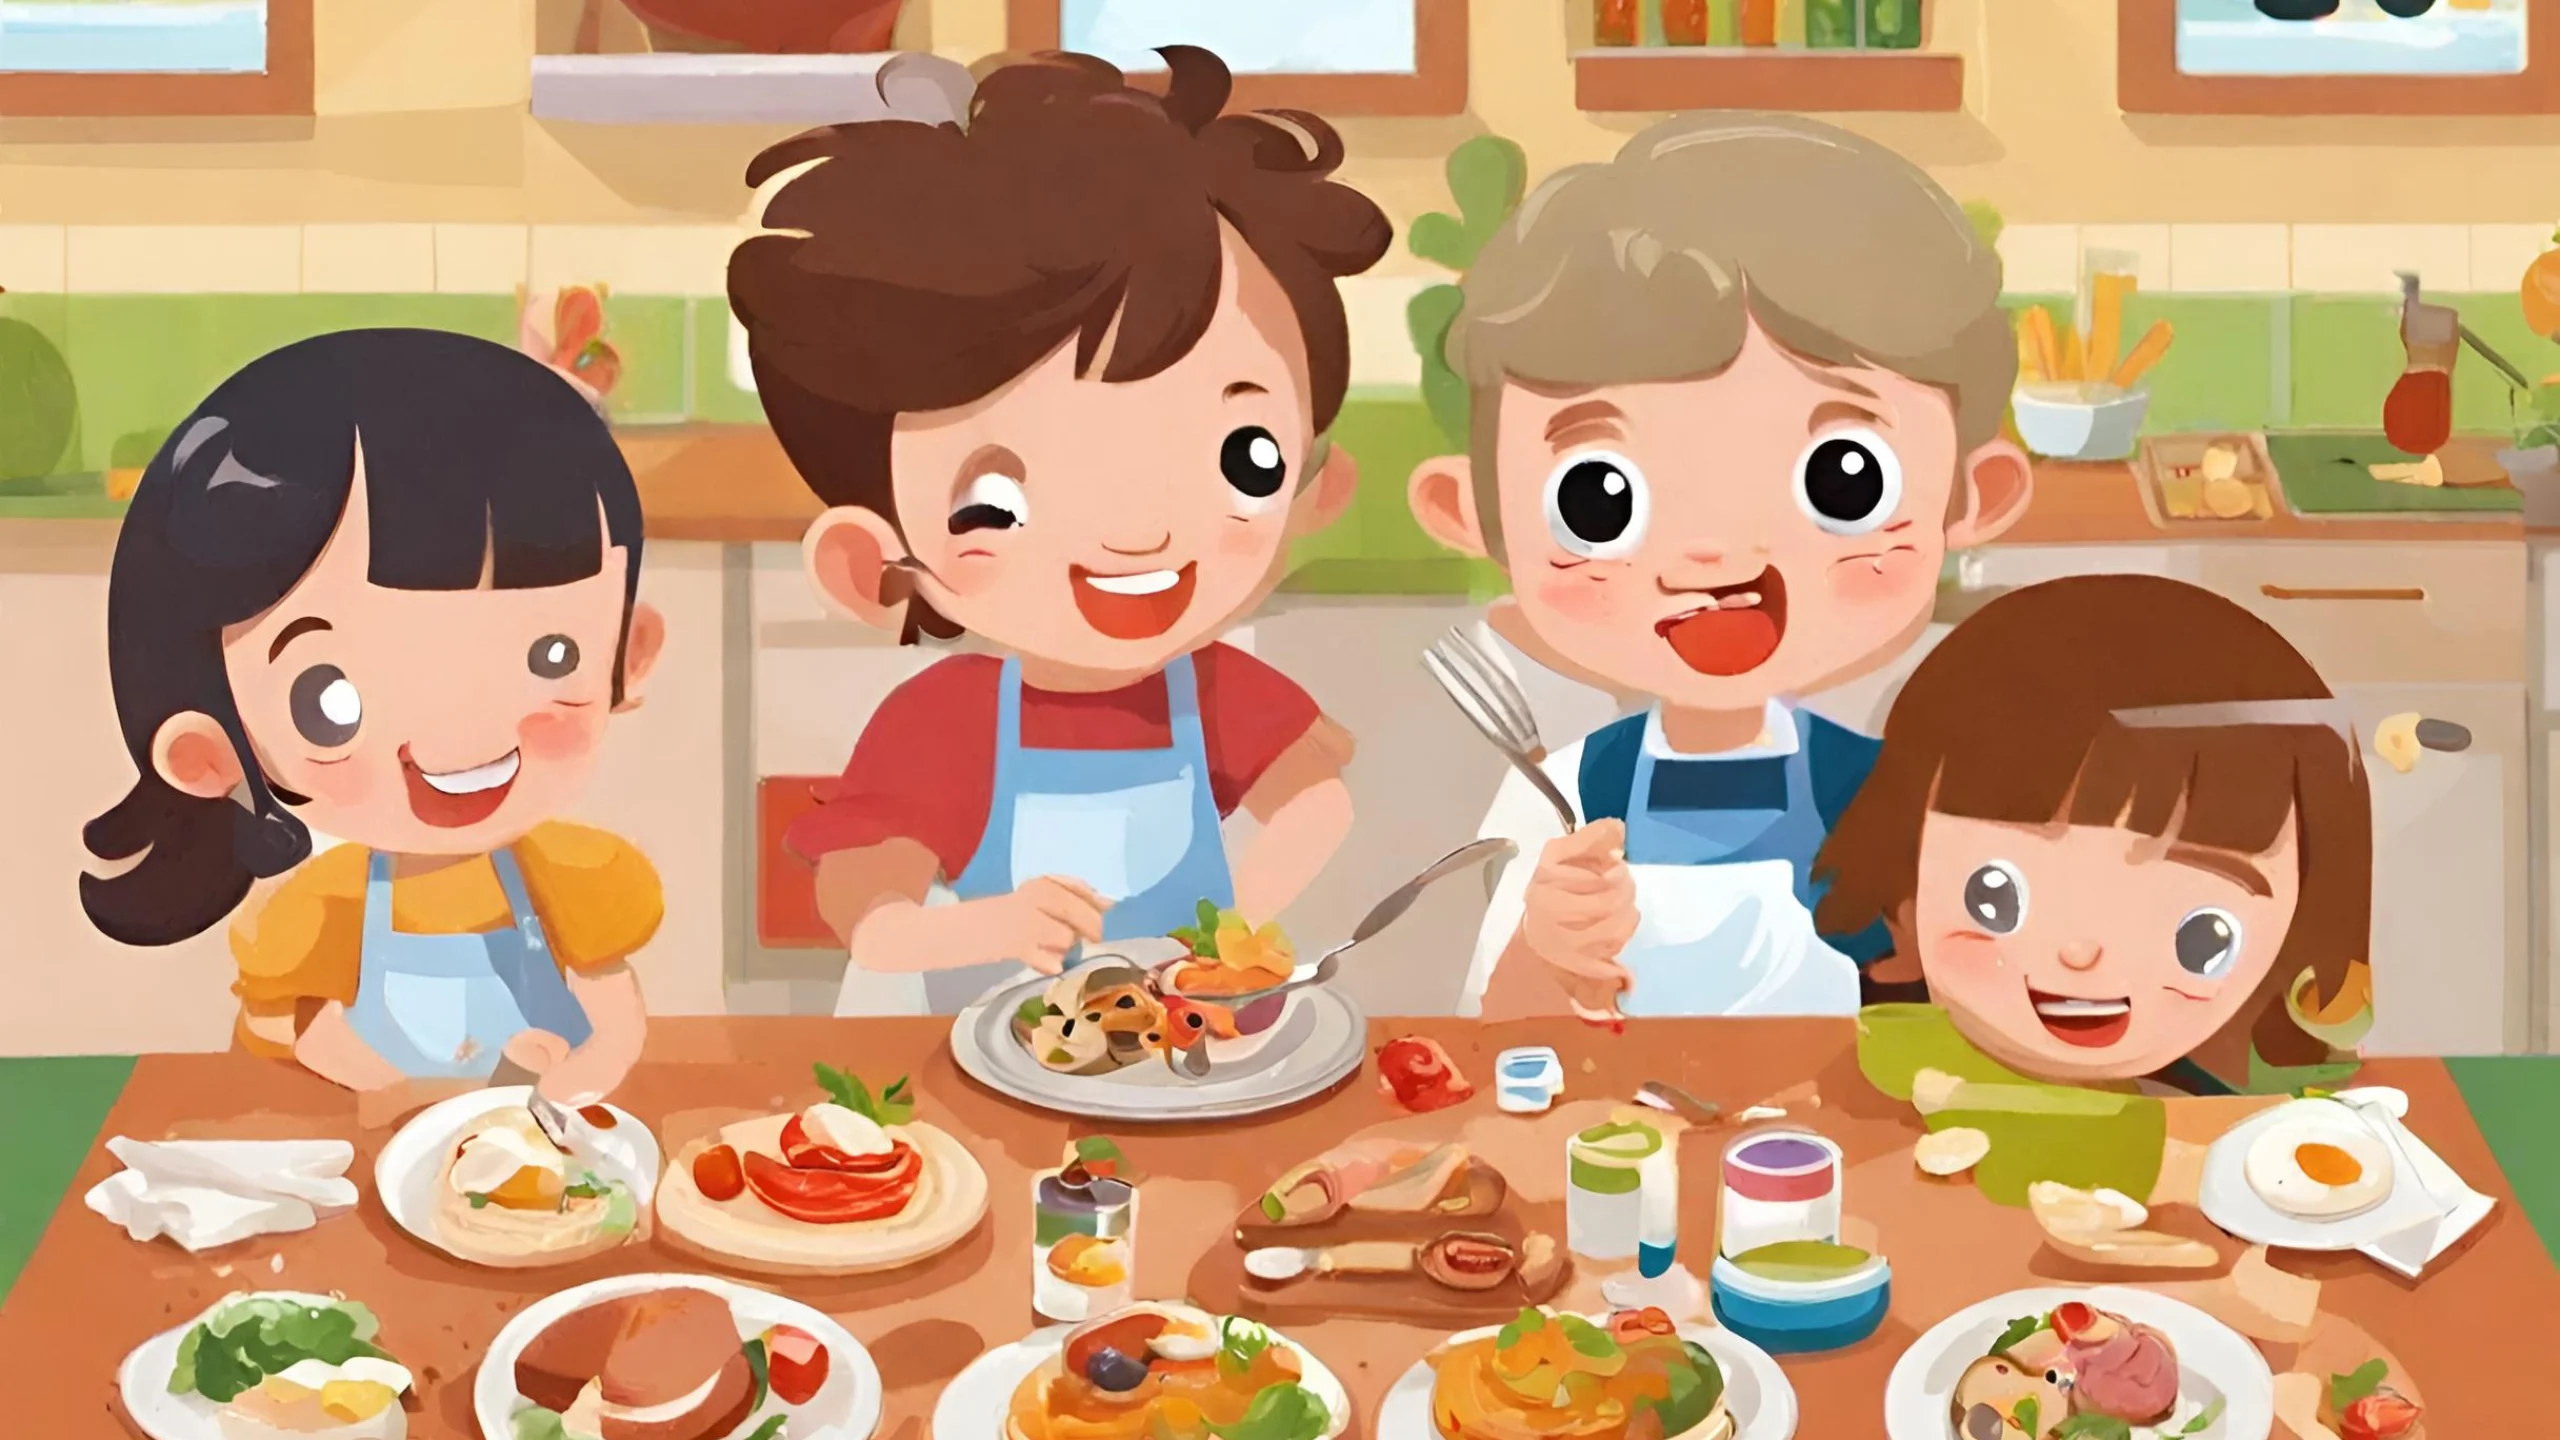 Juegos gastronómicos creativos para los niños